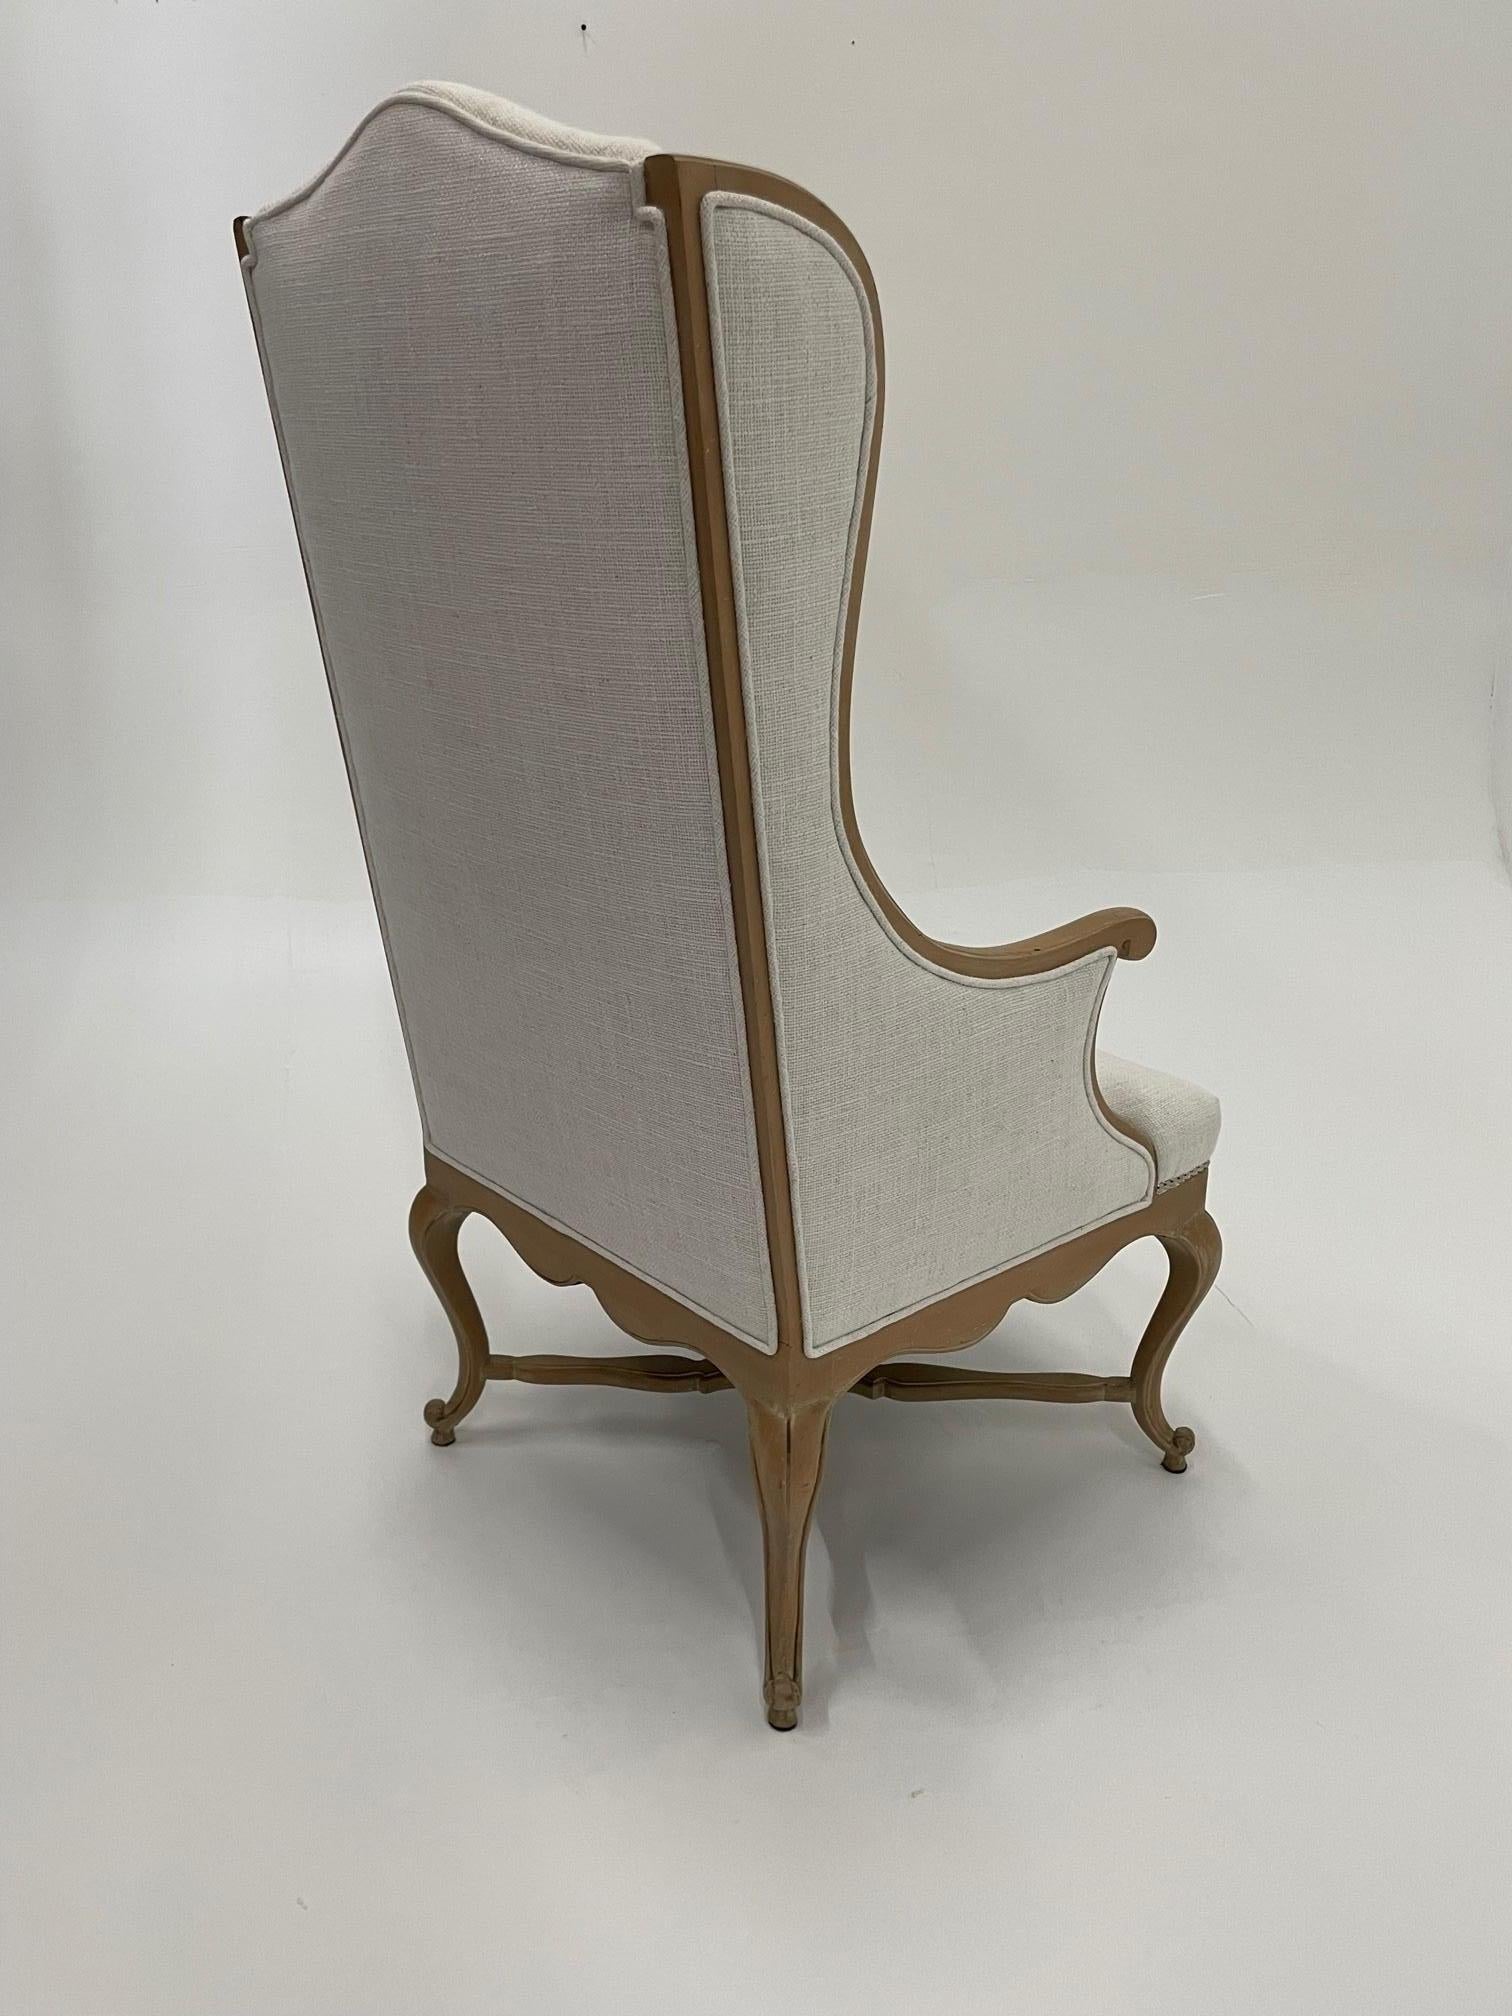 Superbe fauteuil en chêne lavé de style provincial français, avec un beau châssis sculpté et un revêtement en lin blanc neutre.